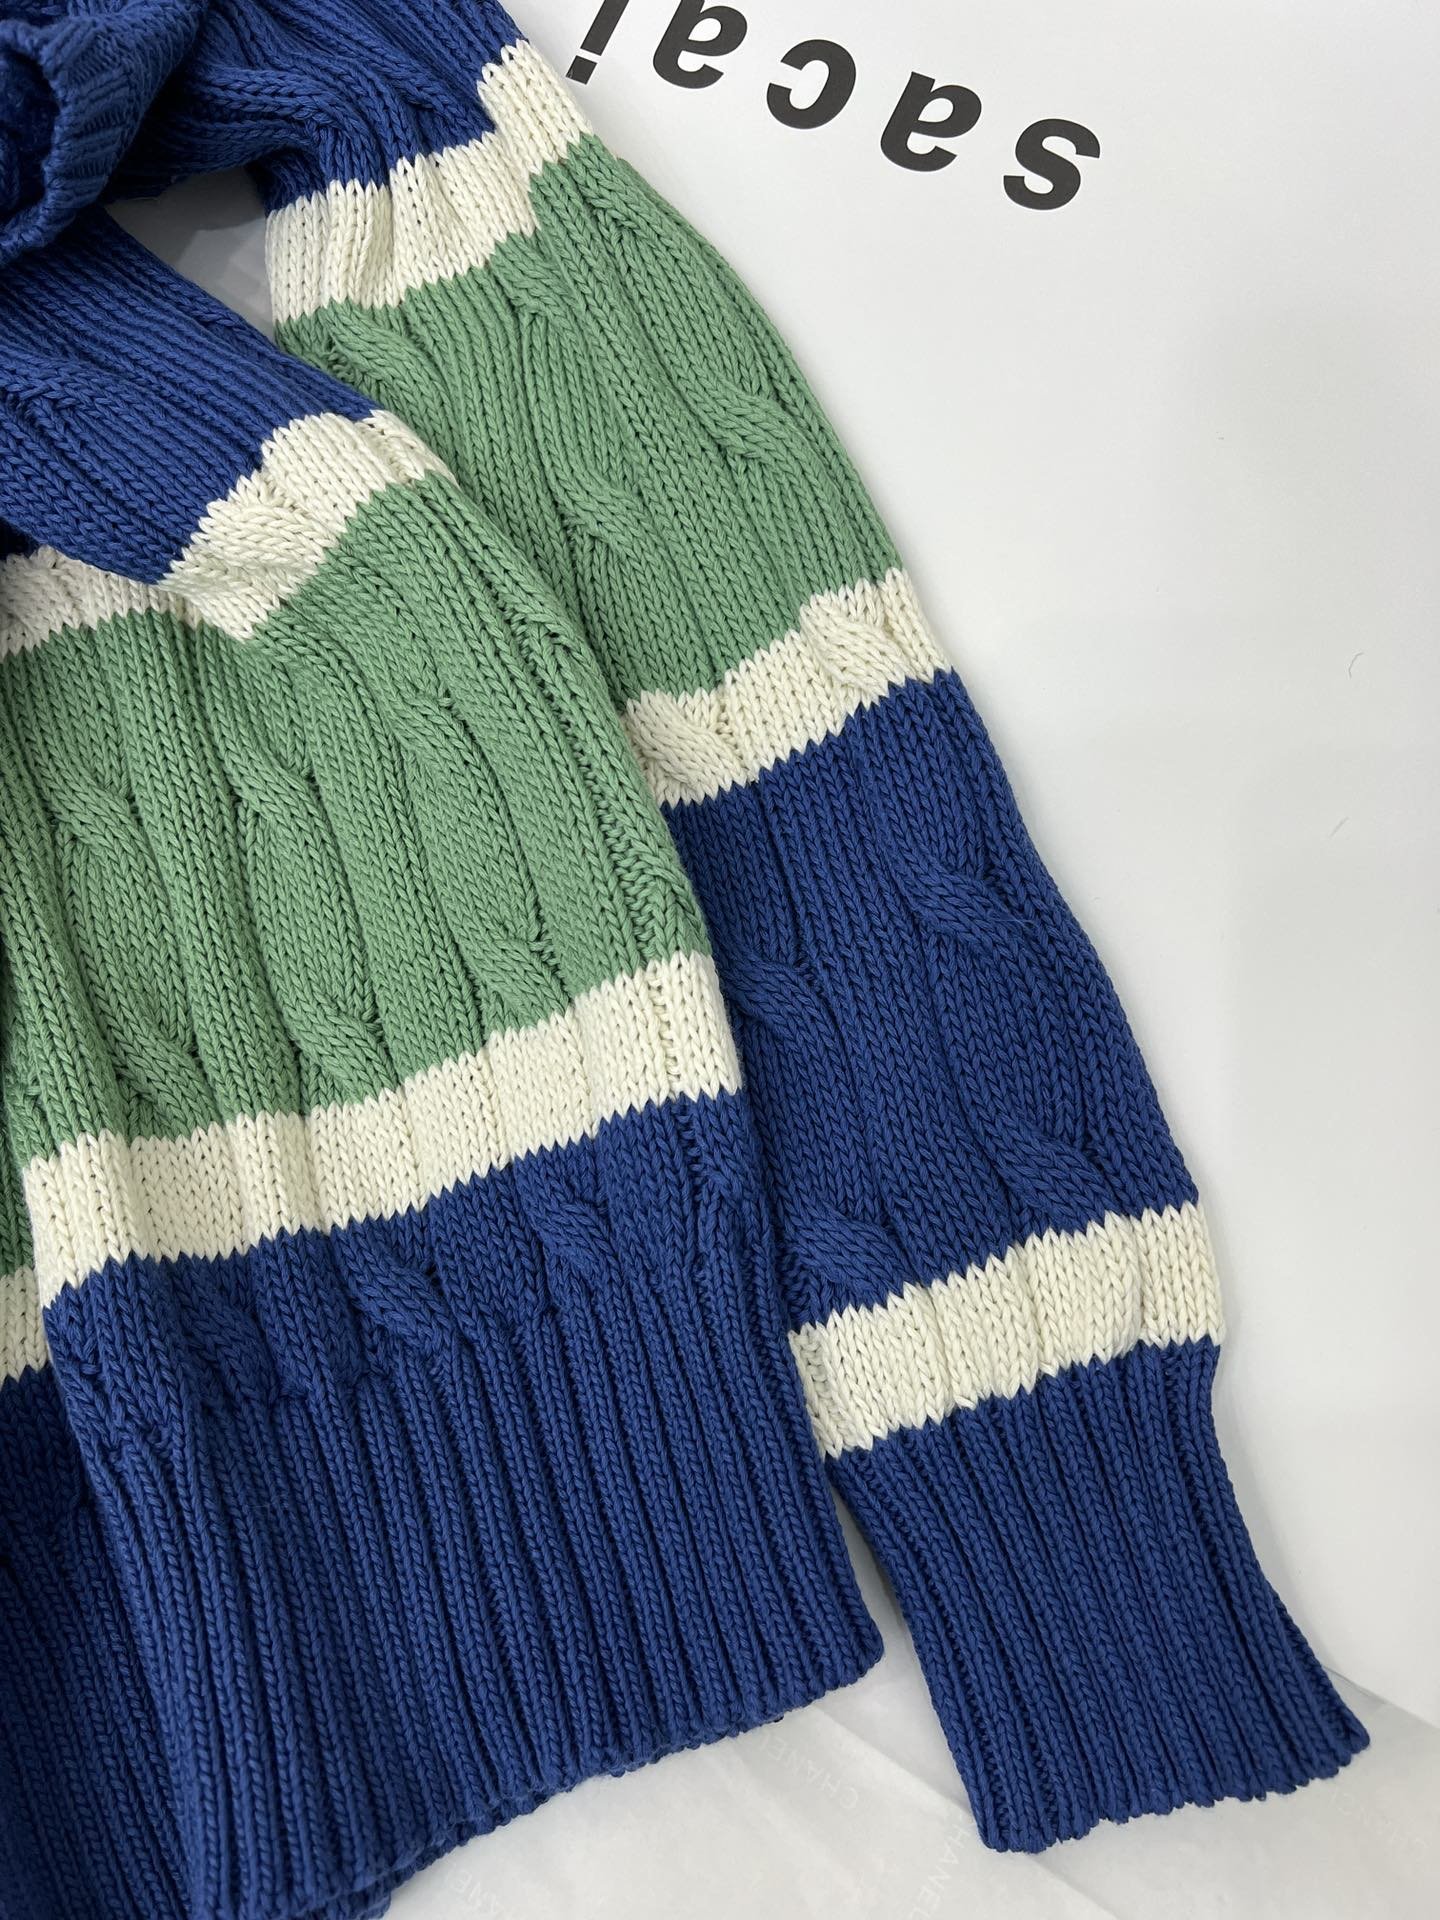 C麻花拼接毛衣定制纱线超好看的颜色拼接色彩饱和度和手感是普通纱线比不了的圆领设计永不过时的针织长袖高级舒